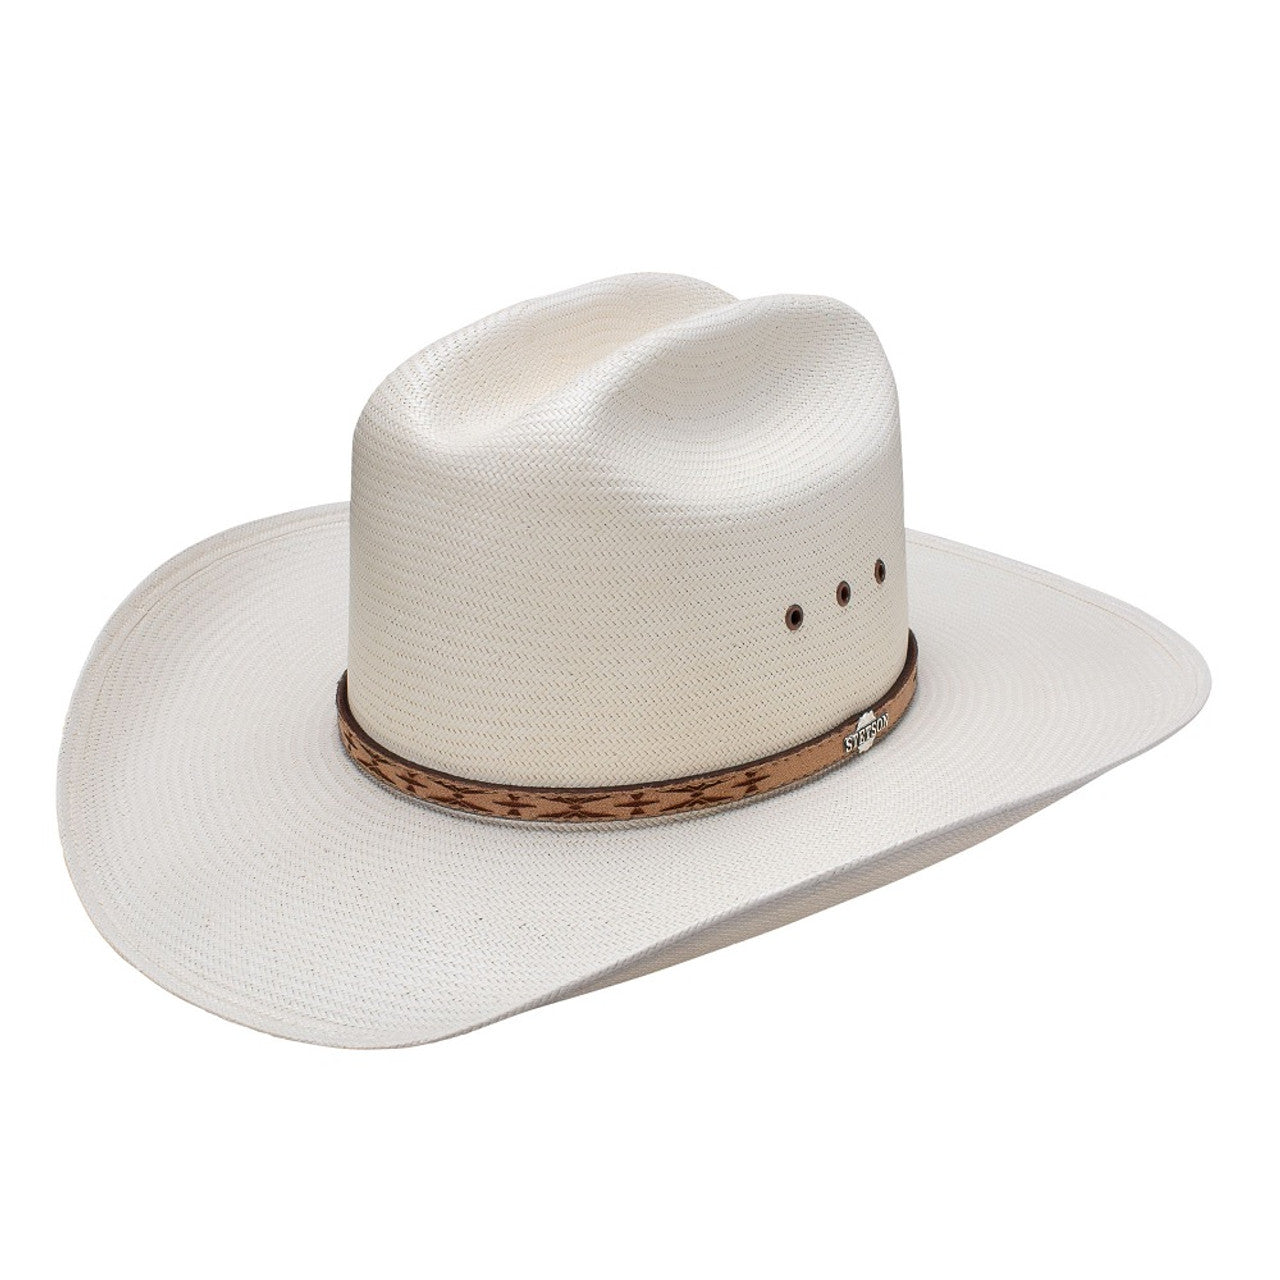 STETSON AZTEC COWBOY HAT